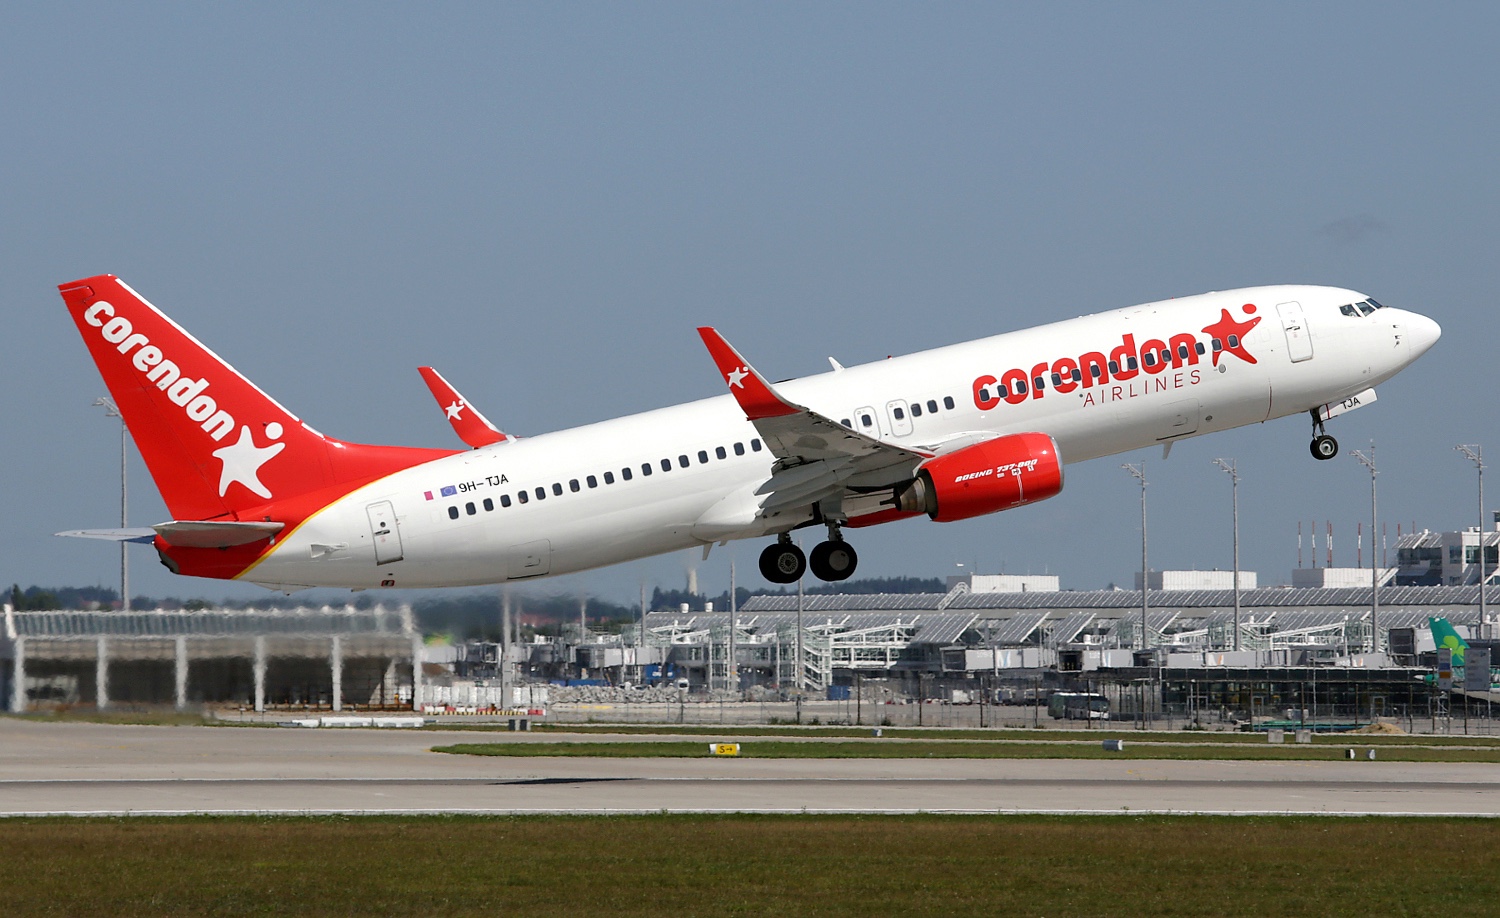 Corendon Airlines, Linkedin Türkiye’nin en iyi şirketlerinden biri oldu